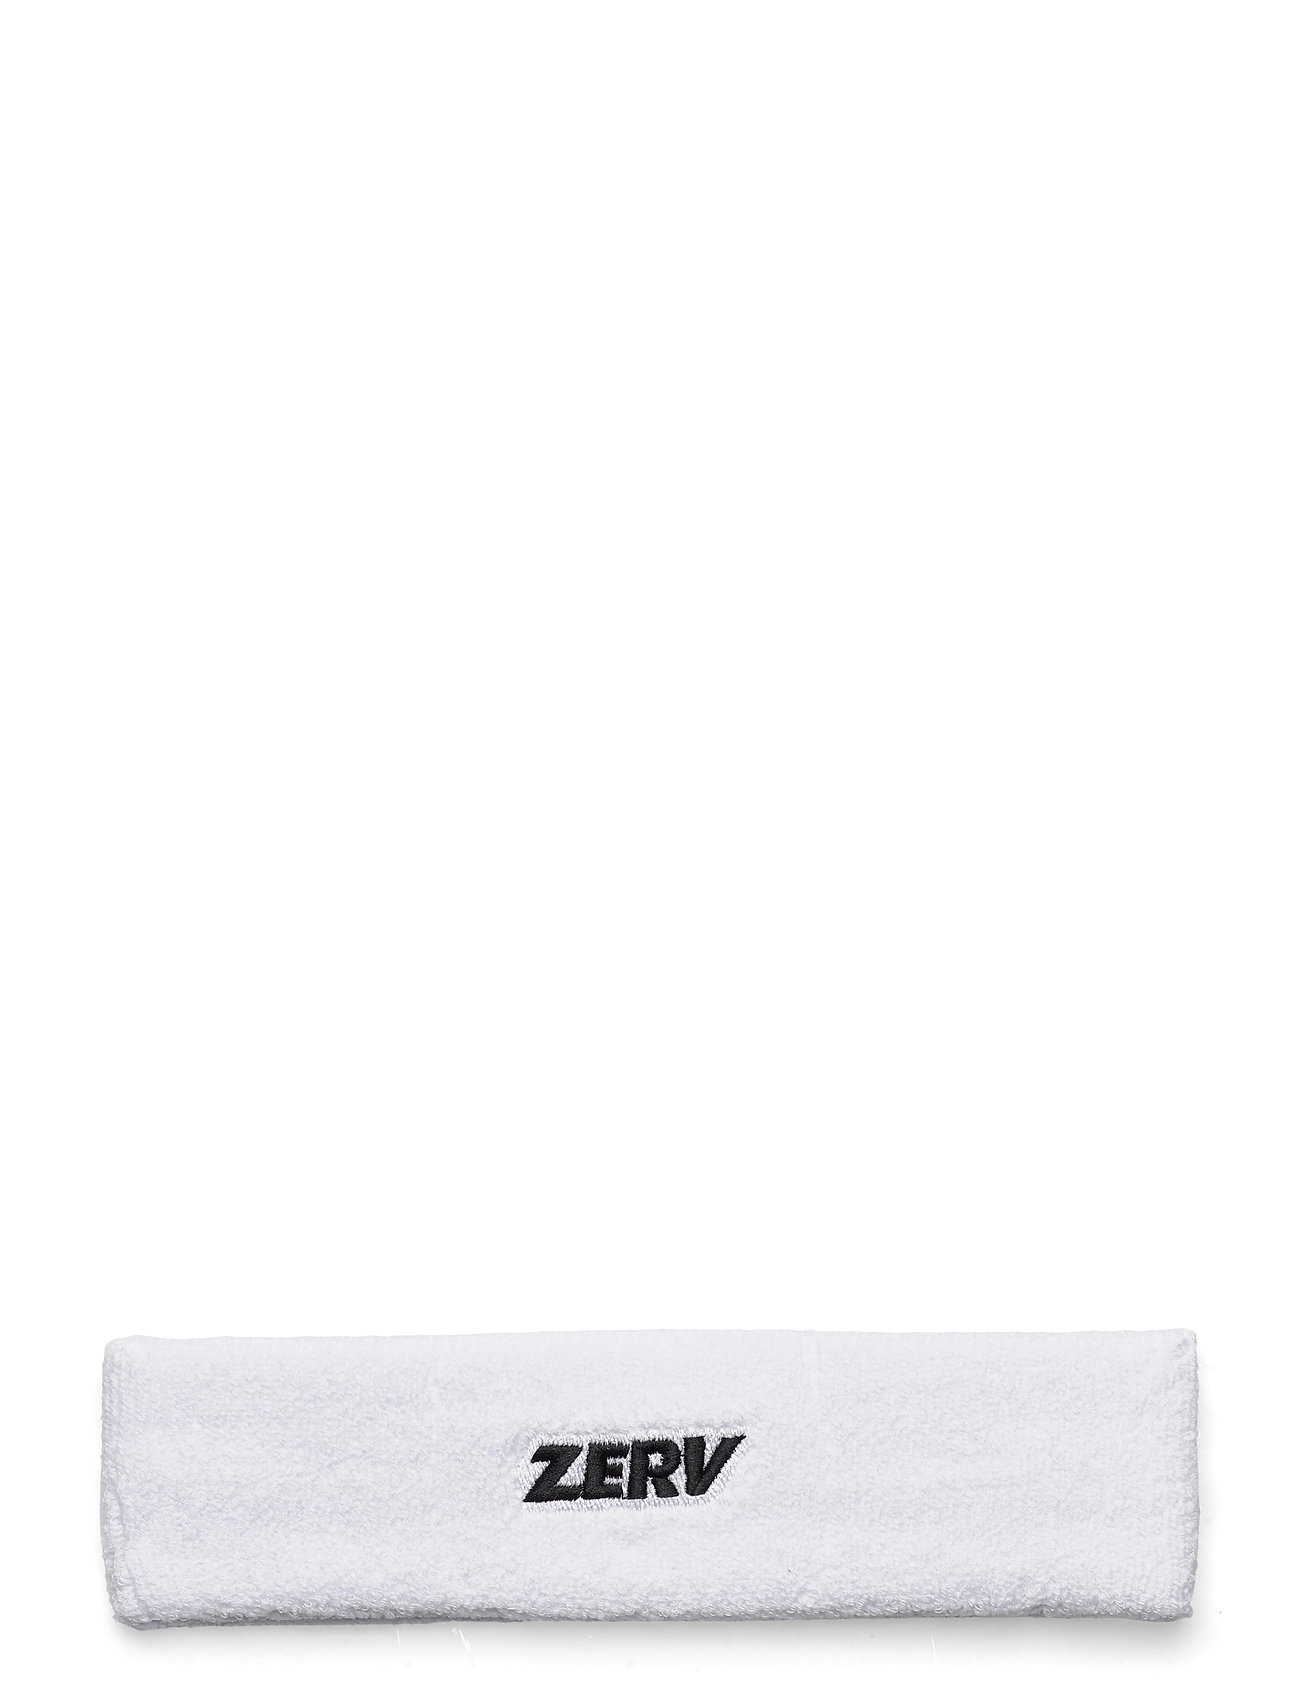 ZERV Towel Grip Black  Get your grip at